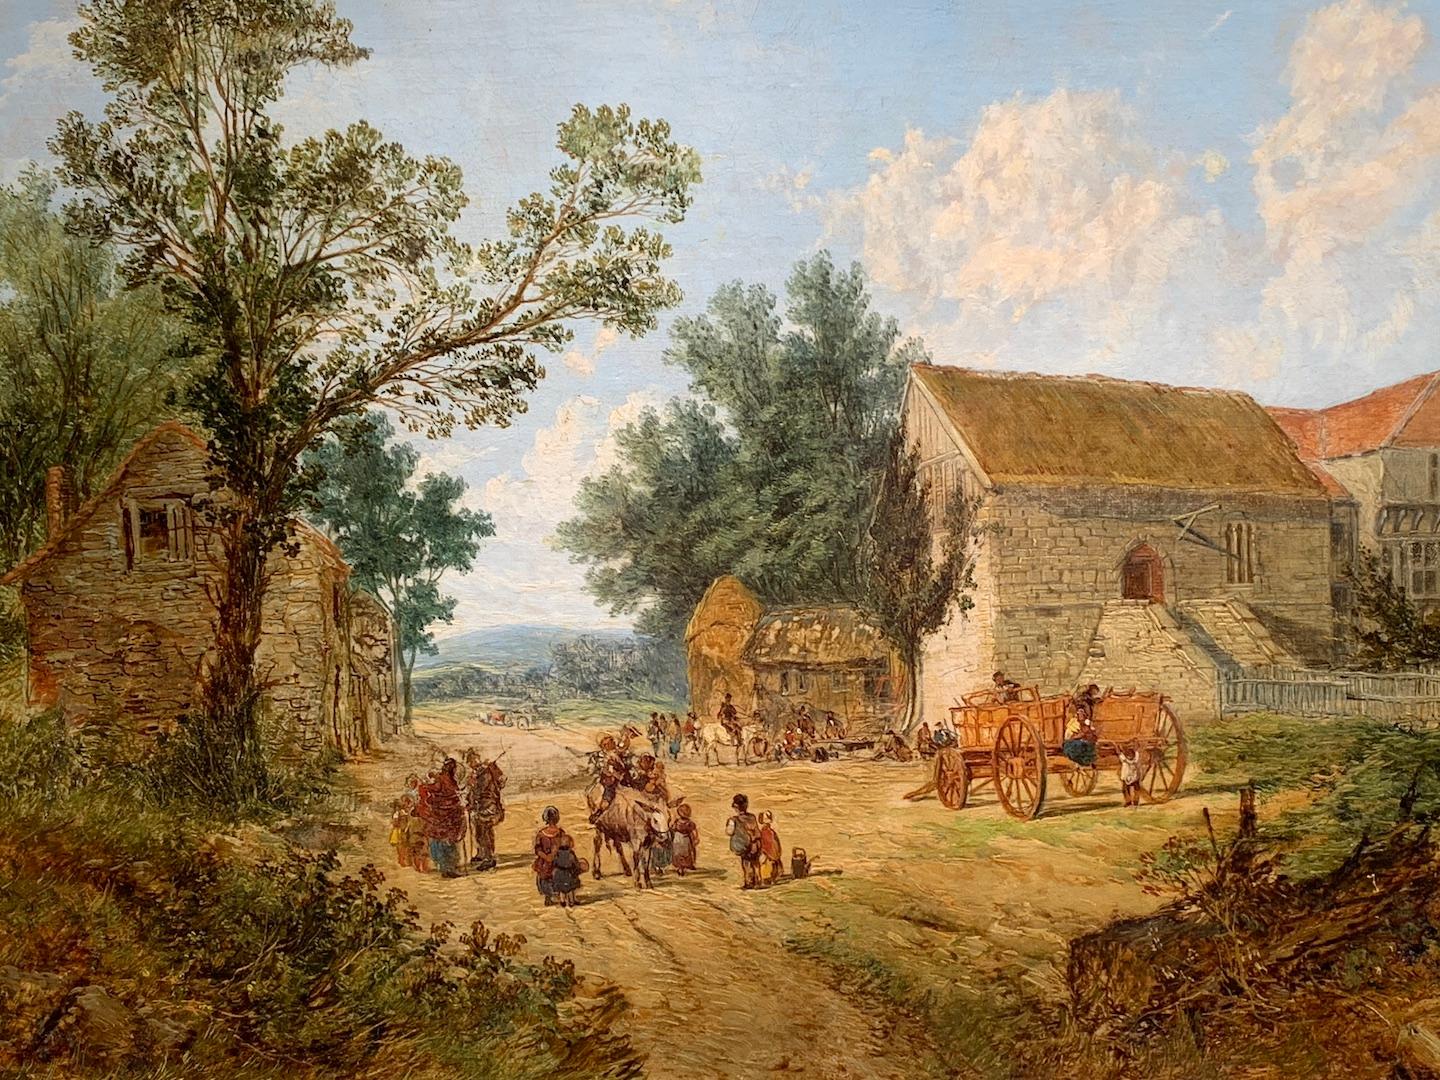  Huile ancienne d'un paysage de village anglais, avec des chevaux, des personnes et un pub. - Painting de John Holland Senior